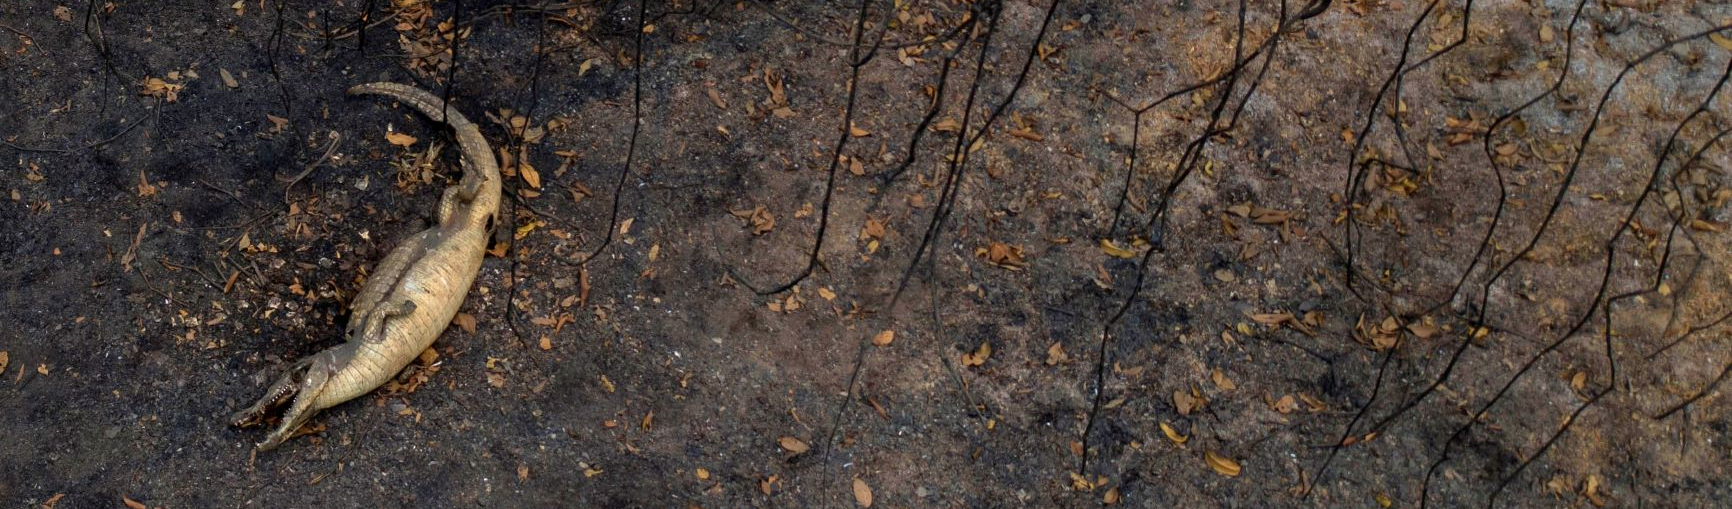 “São muitos animais com queimaduras e fome. É desolador”, diz ambientalista sobre Pantanal